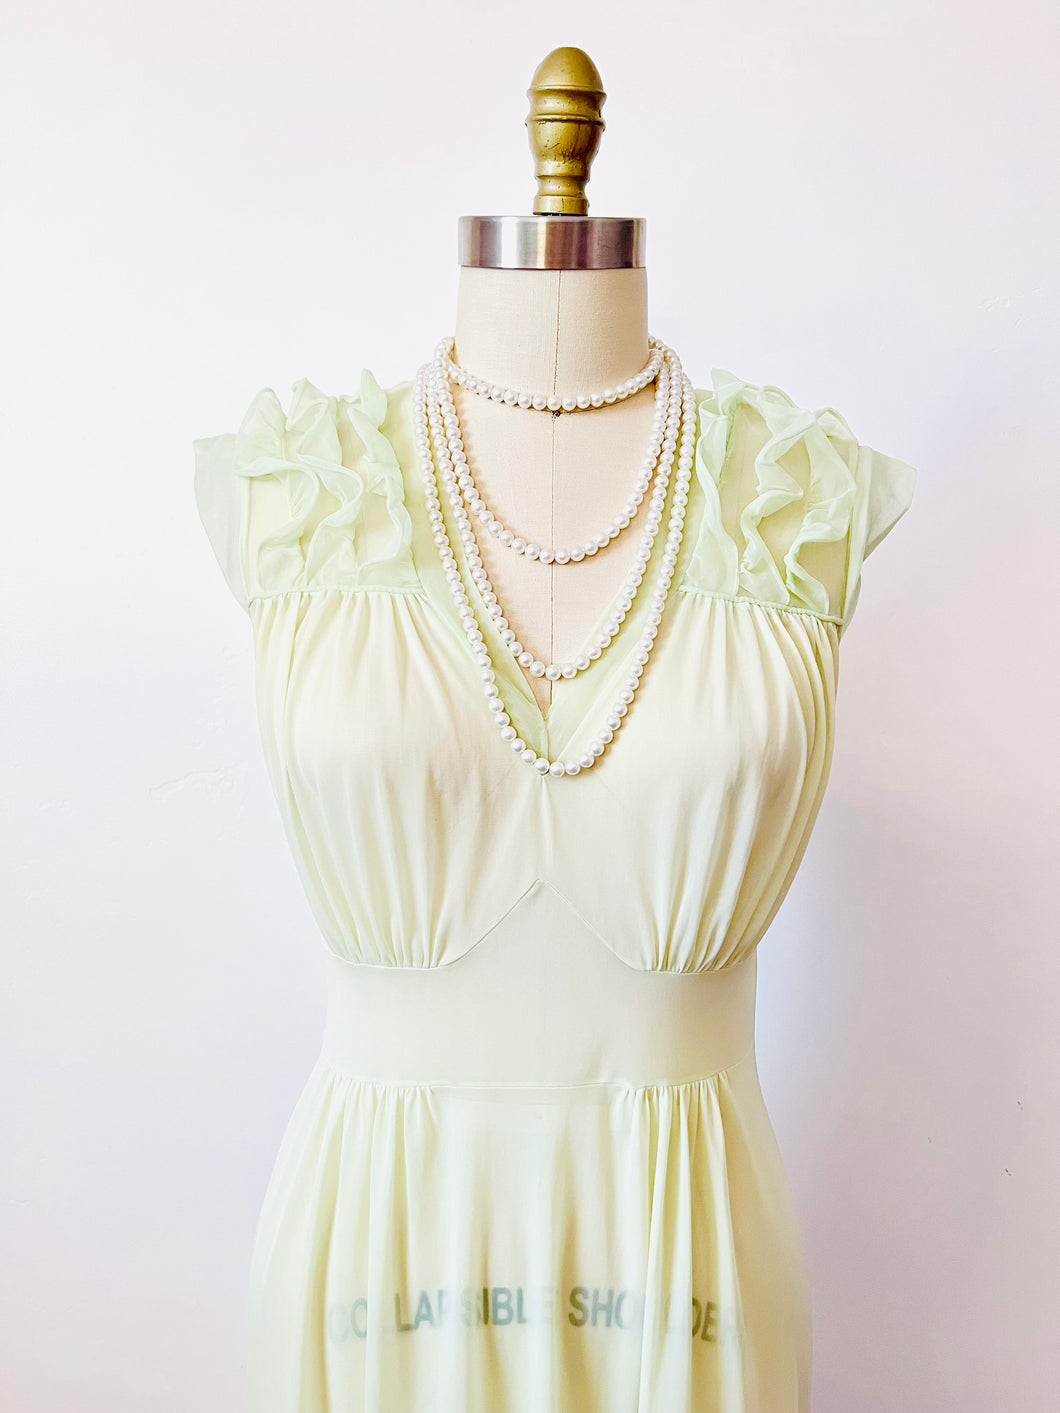 Vintage 1960s pastel green lingerie dress